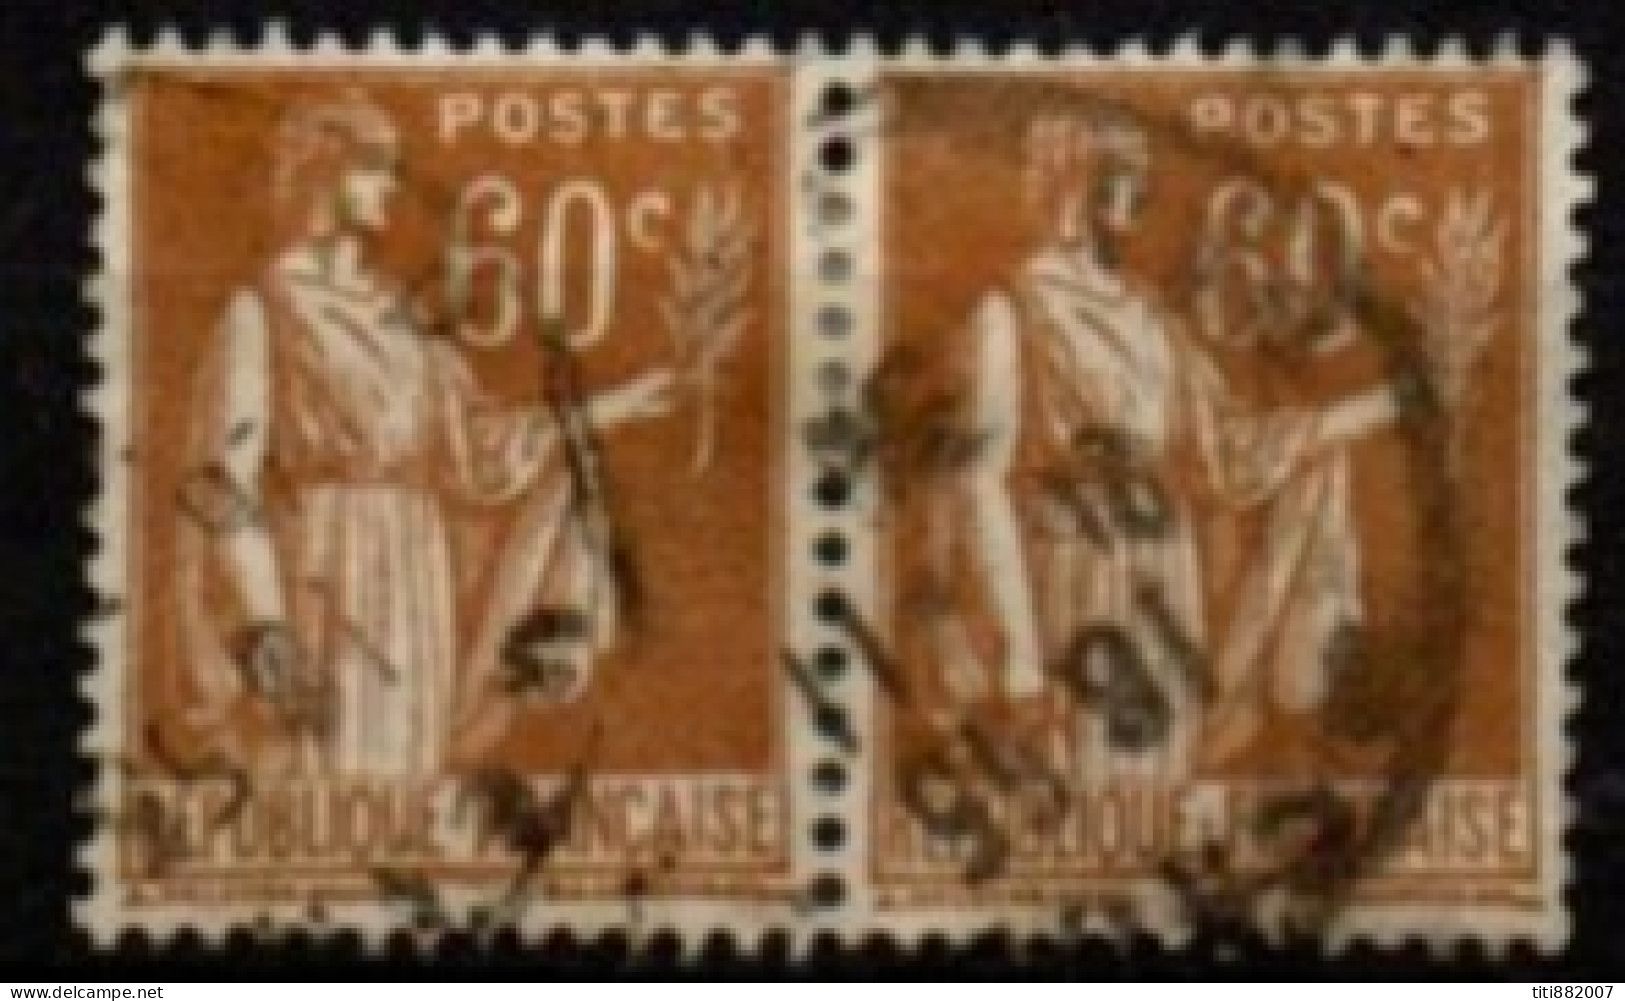 FRANCE    -   1937 .   Y&T N° 364 Oblitérés En Paire - 1932-39 Peace